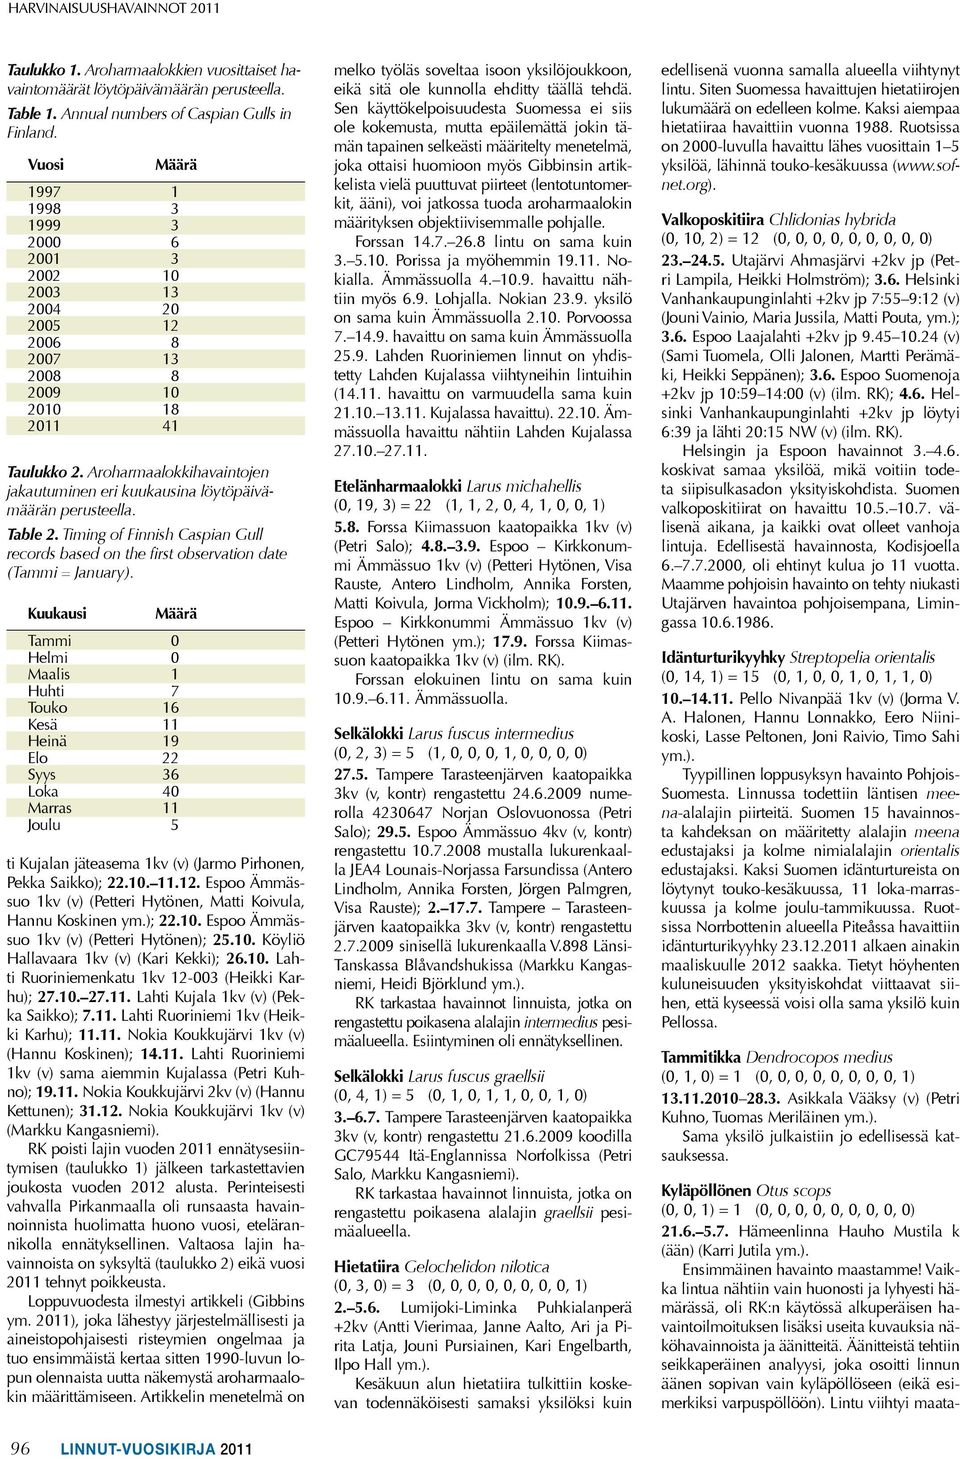 Aroharmaalokkihavaintojen jakautuminen eri kuukausina löytöpäivämäärän perusteella. Table 2. Timing of Finnish Caspian Gull records based on the Þrst observation date (Tammi = January).